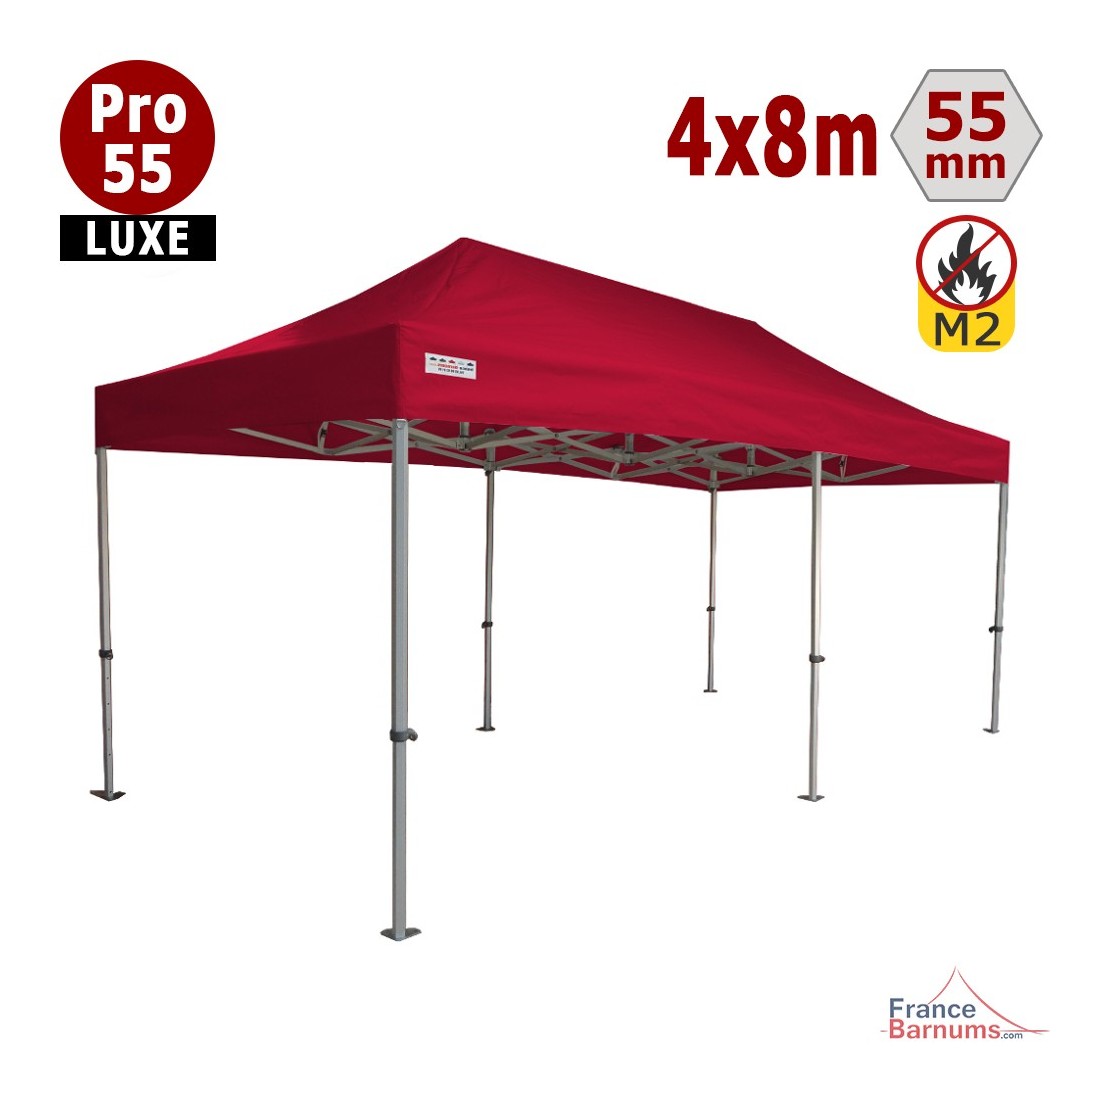 Tente pliante 4x8m Alu Pro 55 LUXE (Rouge) - REF 262S | France Barnums